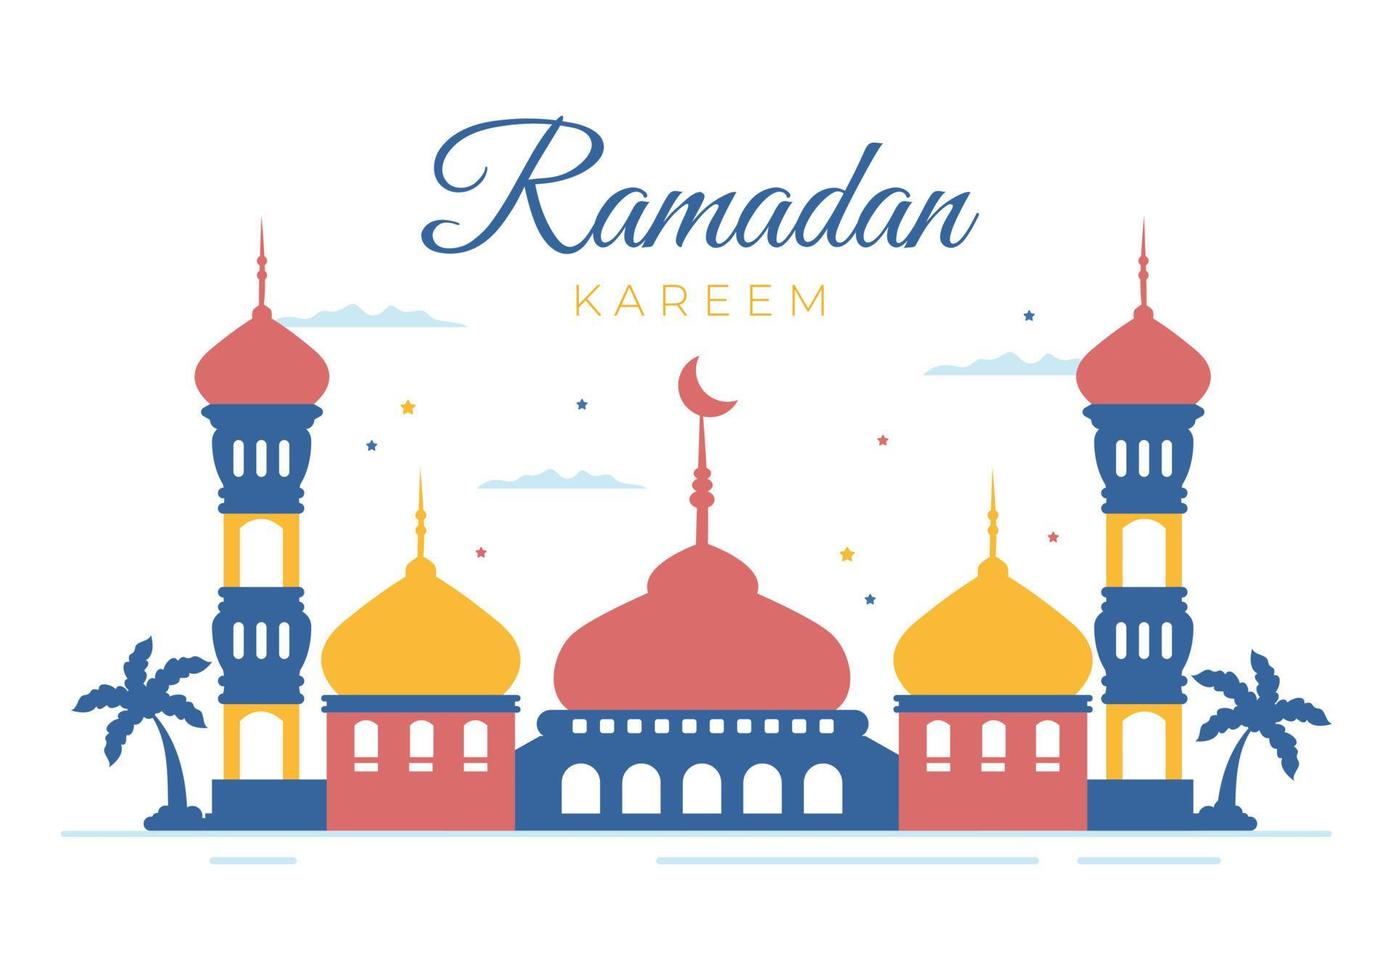 ramadan kareem med moské, lyktor och måne i platt bakgrund vektorillustration för religiös högtid islamisk eid fitr eller adha festival banner eller affisch vektor